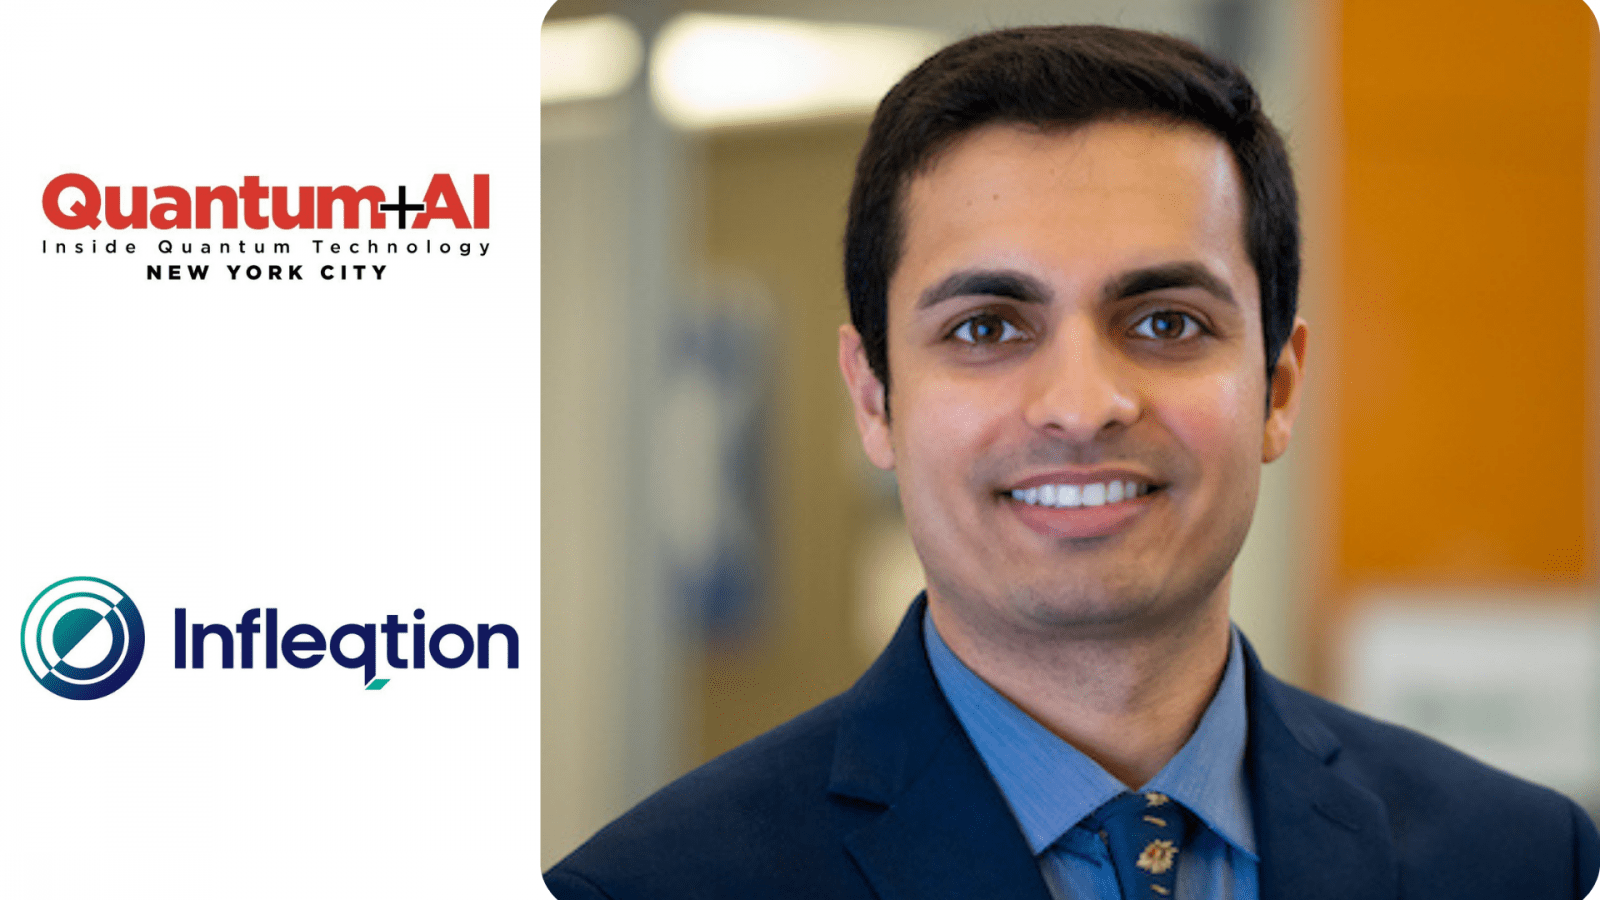 อัปเดตการประชุม Quantum + AI: Pranav Gokhale รองประธานฝ่ายซอฟต์แวร์ควอนตัมที่ Infleqtion เป็นวิทยากรปี 2024 - Inside Quantum Technology